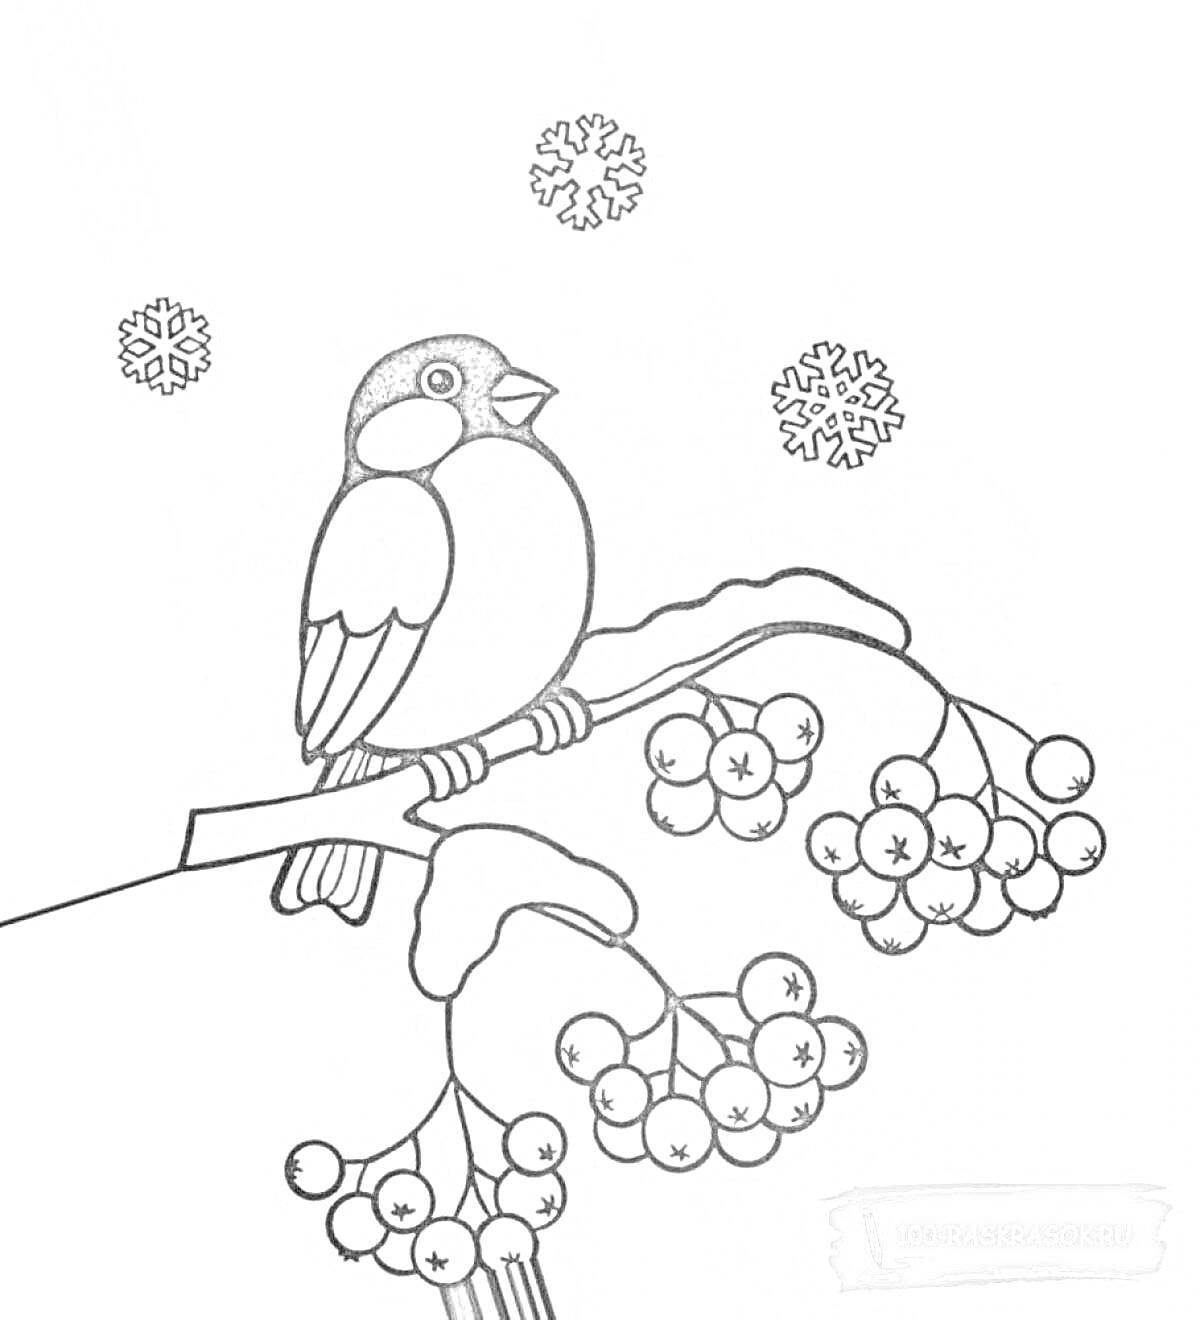 Раскраска Снегирь на ветке рябины с гроздьями ягод зимой, снежинки вокруг